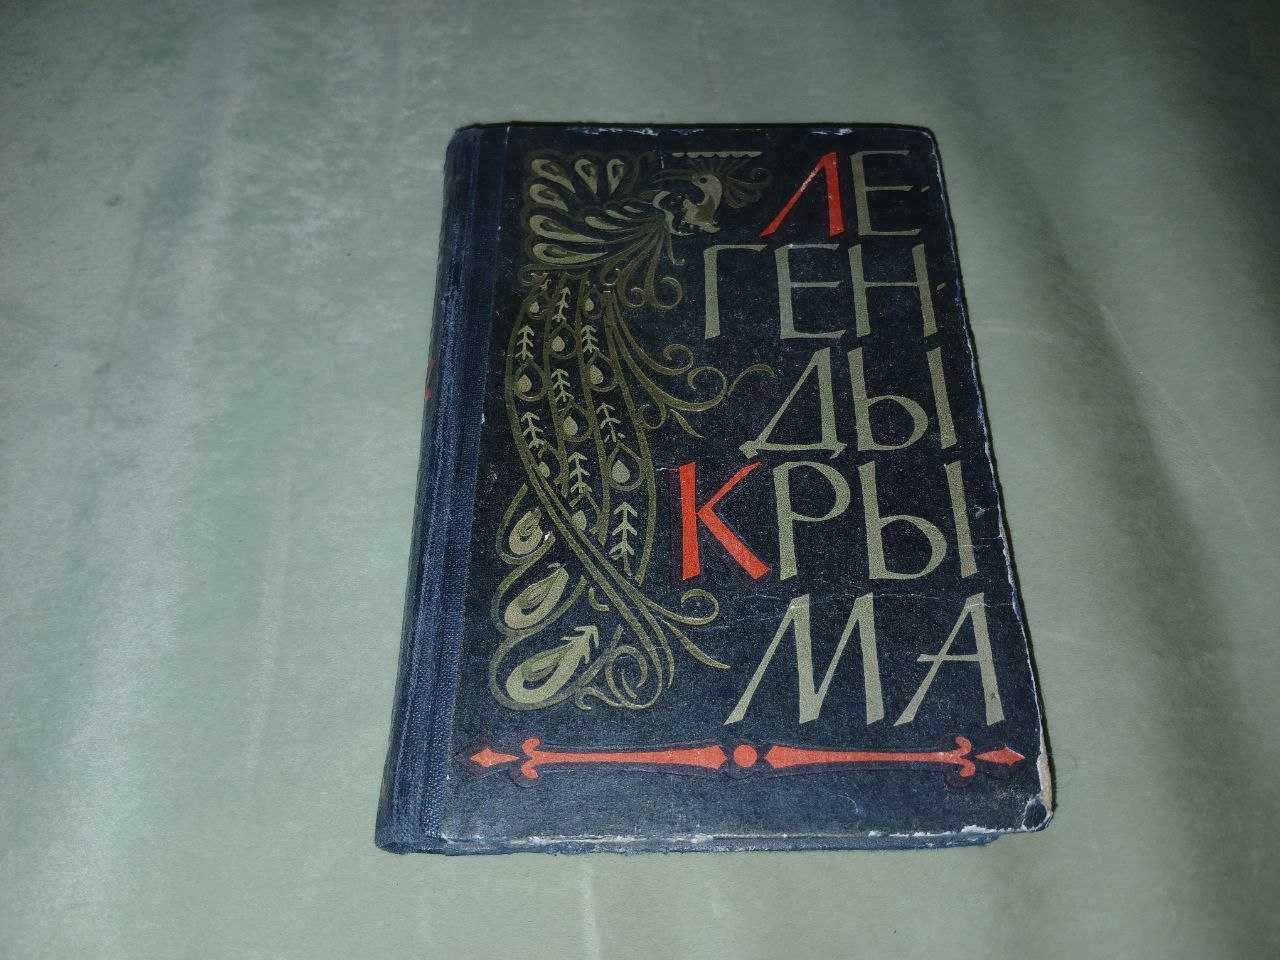 Легенды Крыма. Крымиздат, Сиферополь, 1961 год.